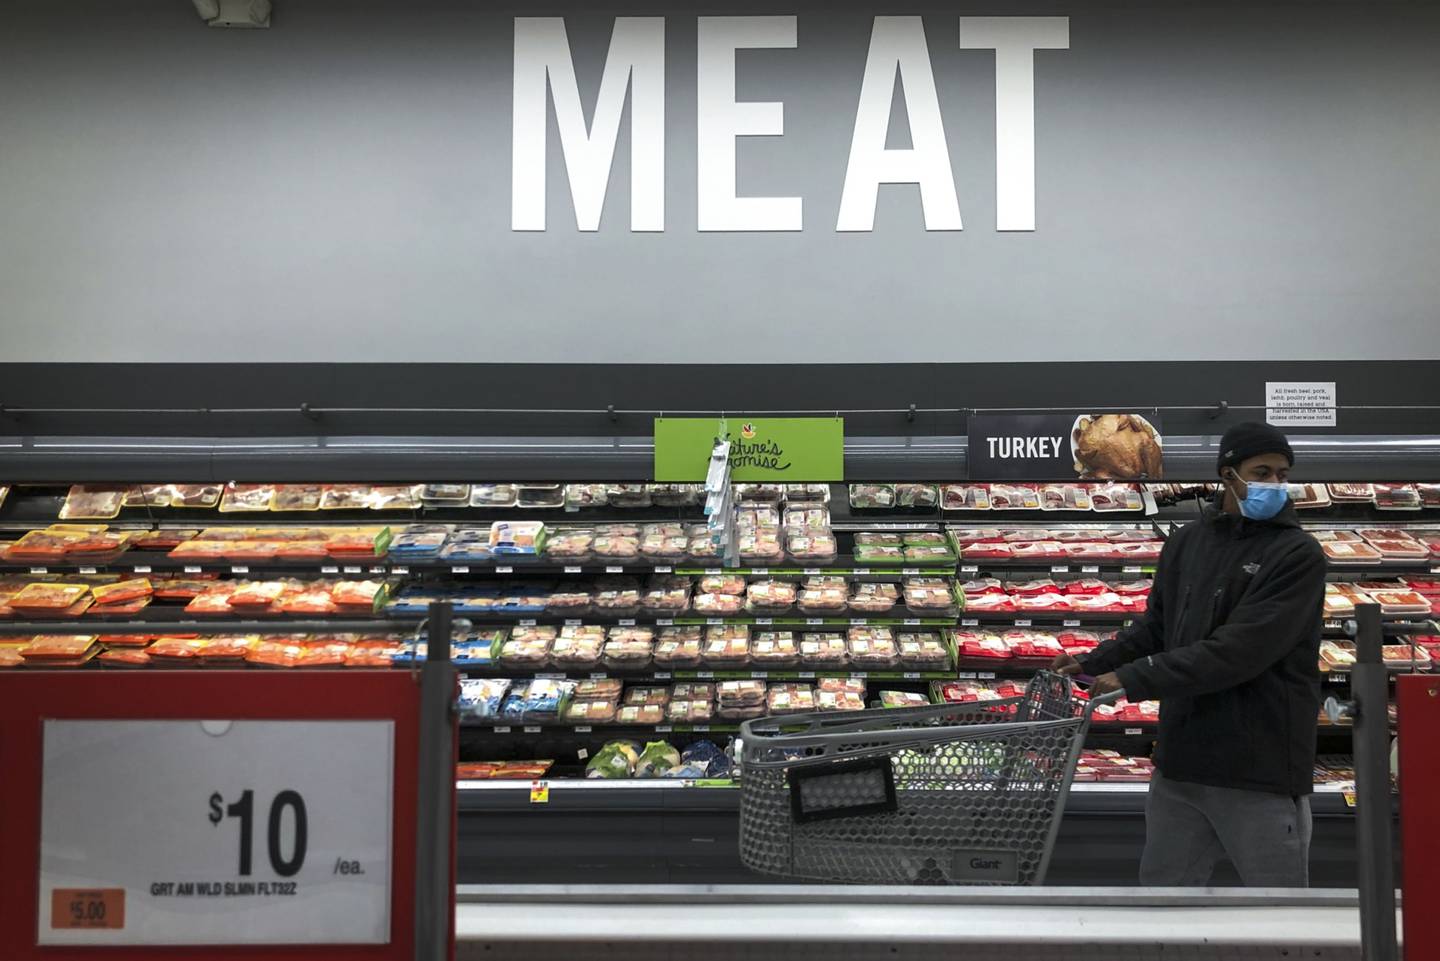 Los futuros de carne de cerdo cotizan en la Bolsa Mercantil de Chicago (CME por sus siglas en inglés). En el mercado se enlistan los contratos correspondientes a febrero, abril, mayo, junio, agosto y octubre.